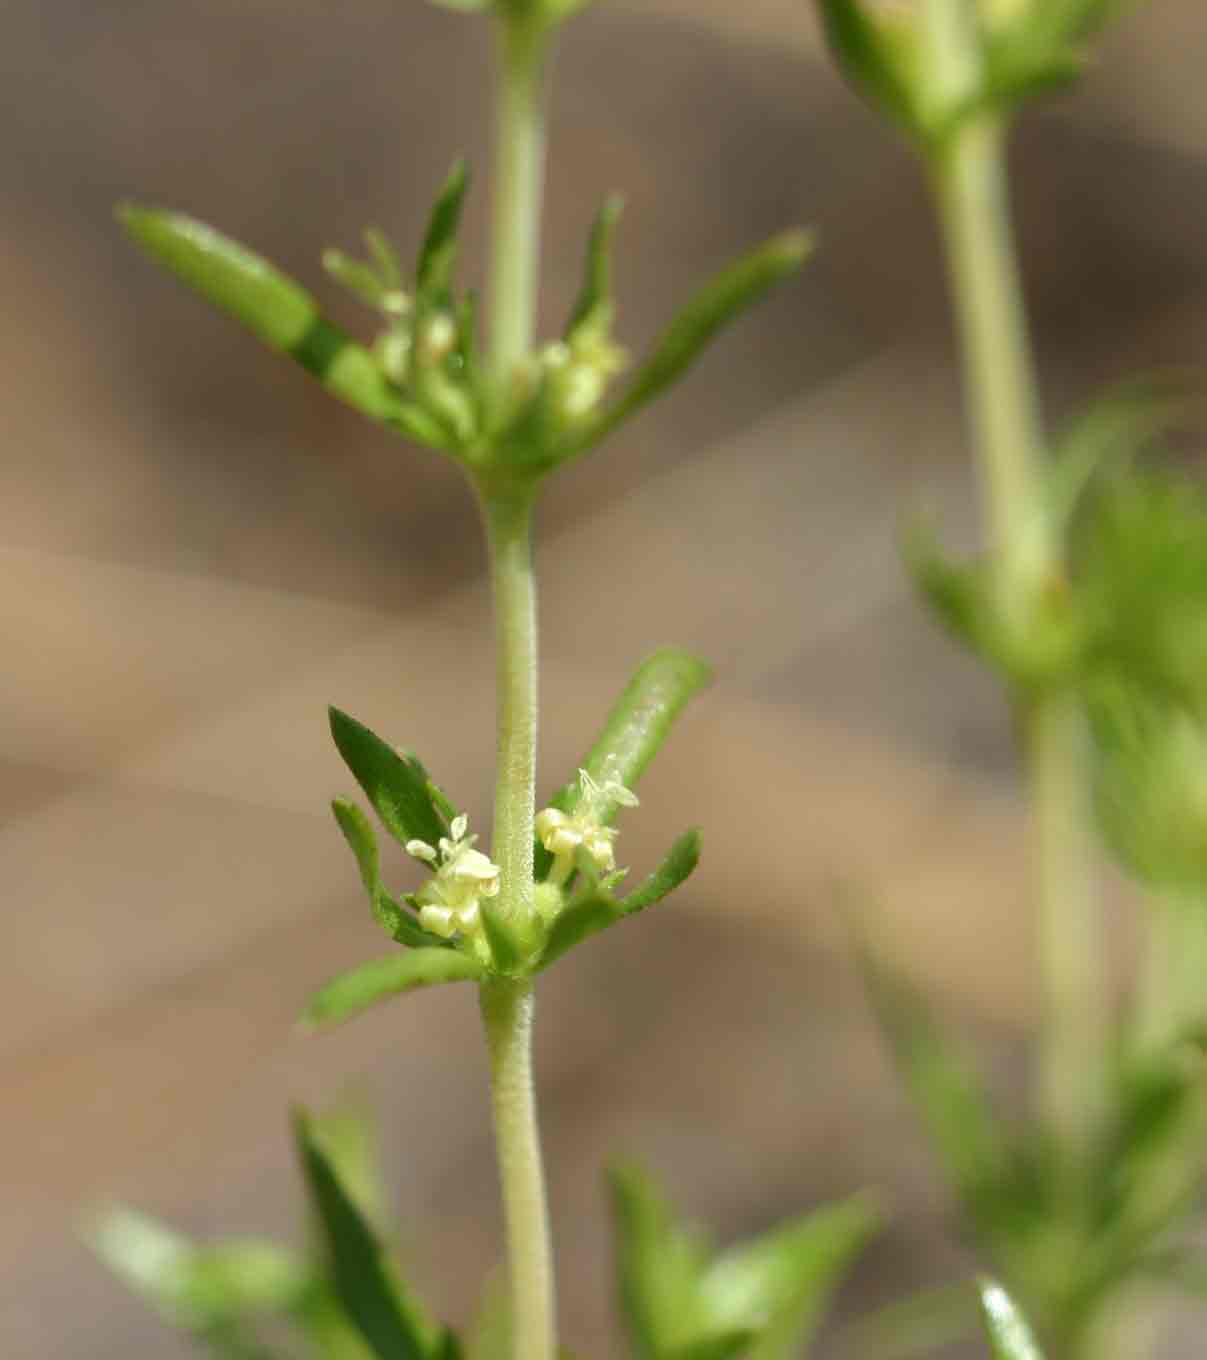 Anthospermum rigidum subsp. pumilum